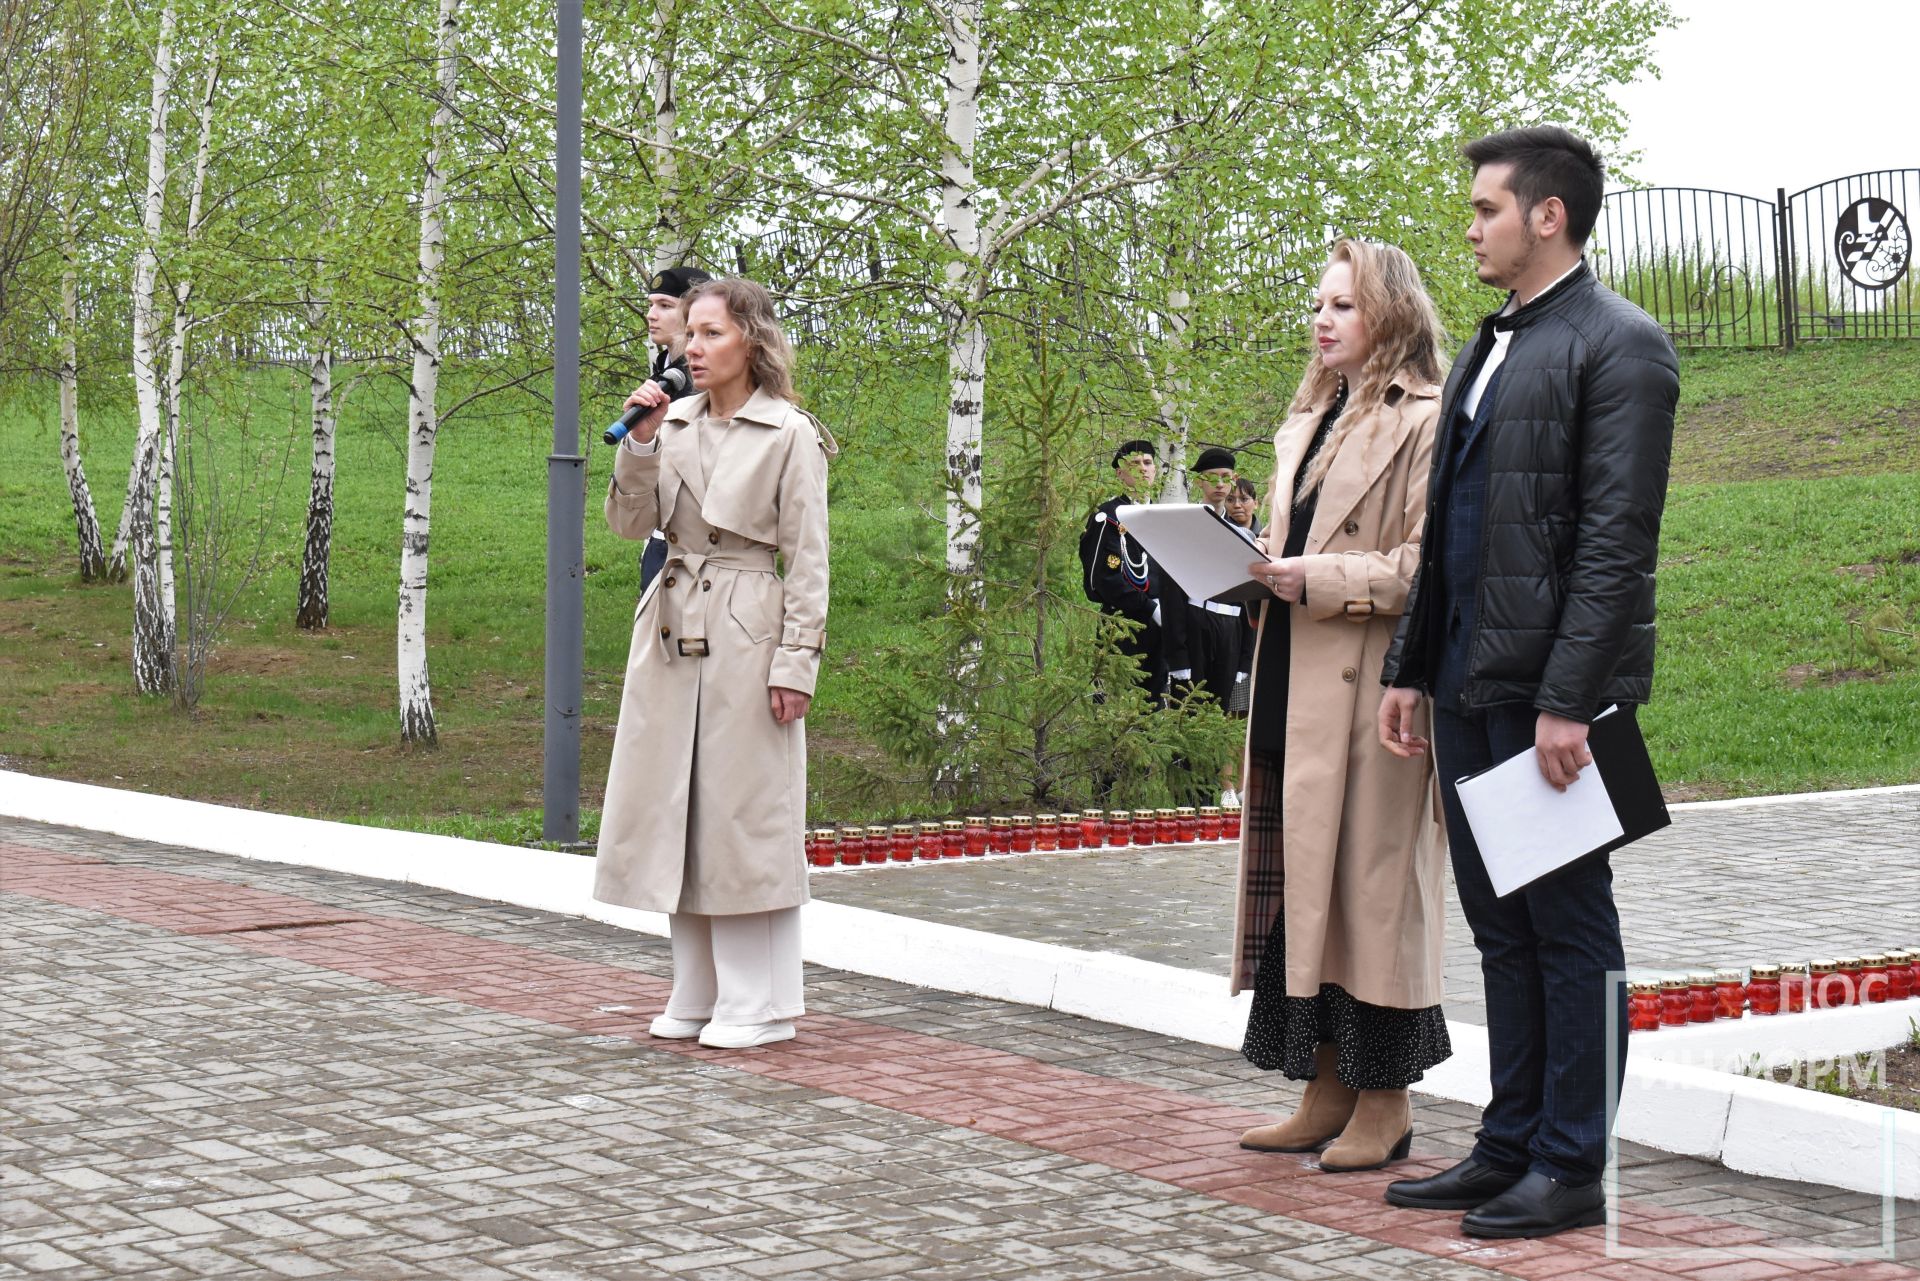 Жители Камских Полян почтили память жертвам и участникам, ликвидаторам катастрофы на Чернобыльской АЭС